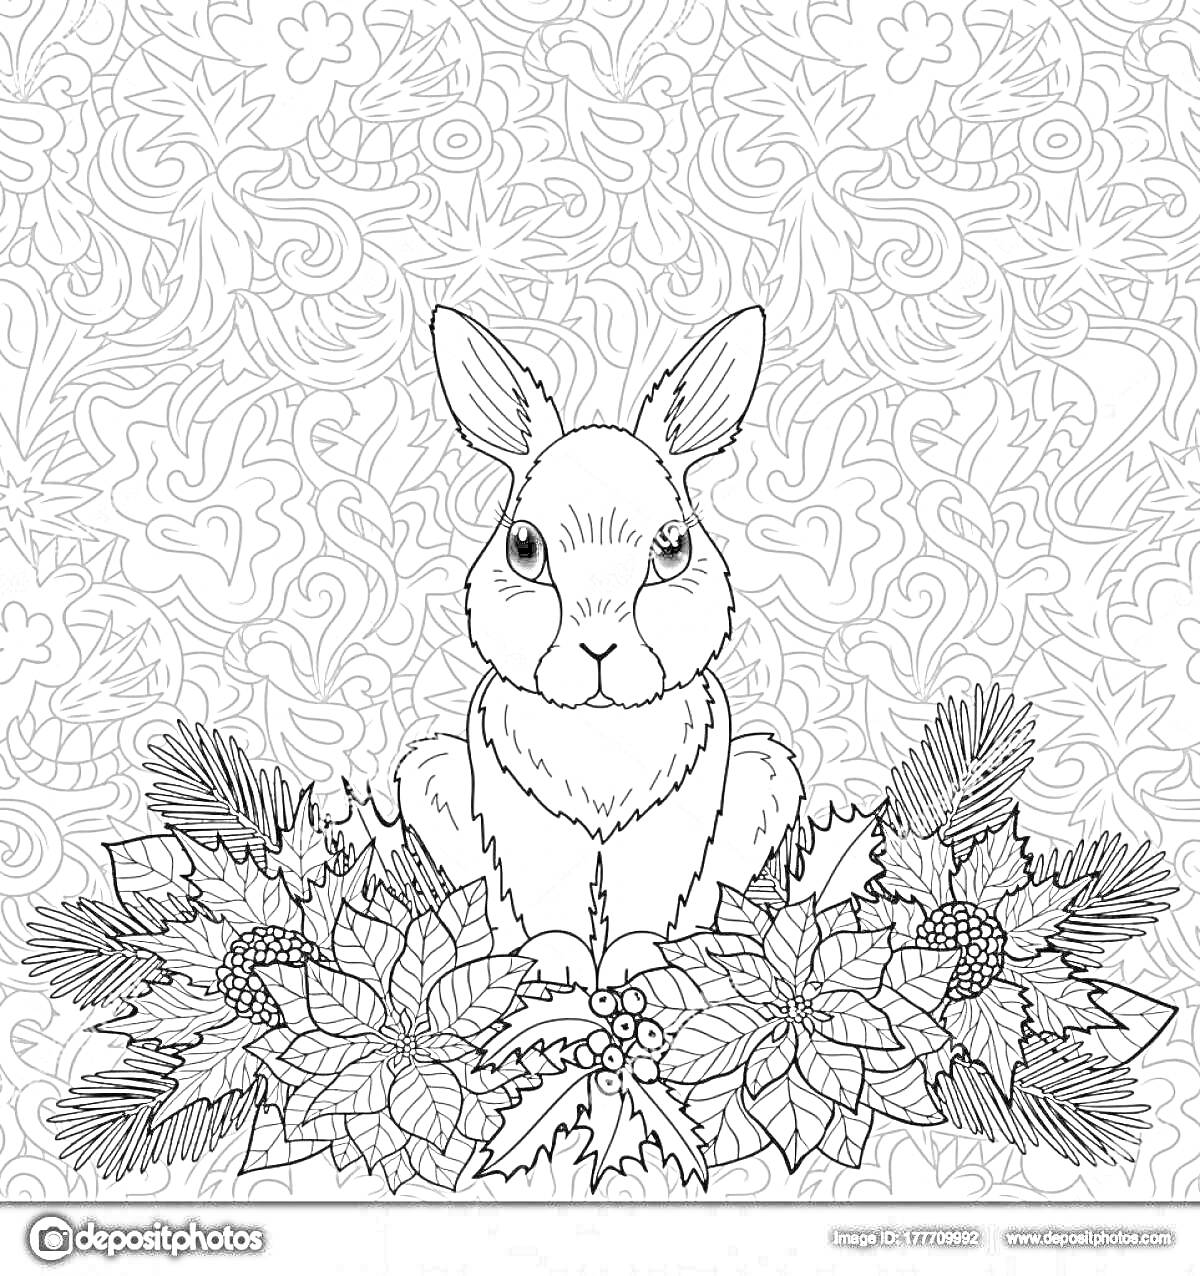 Кролик на фоне орнамента с новогодними украшениями, еловыми ветками и пуансеттией